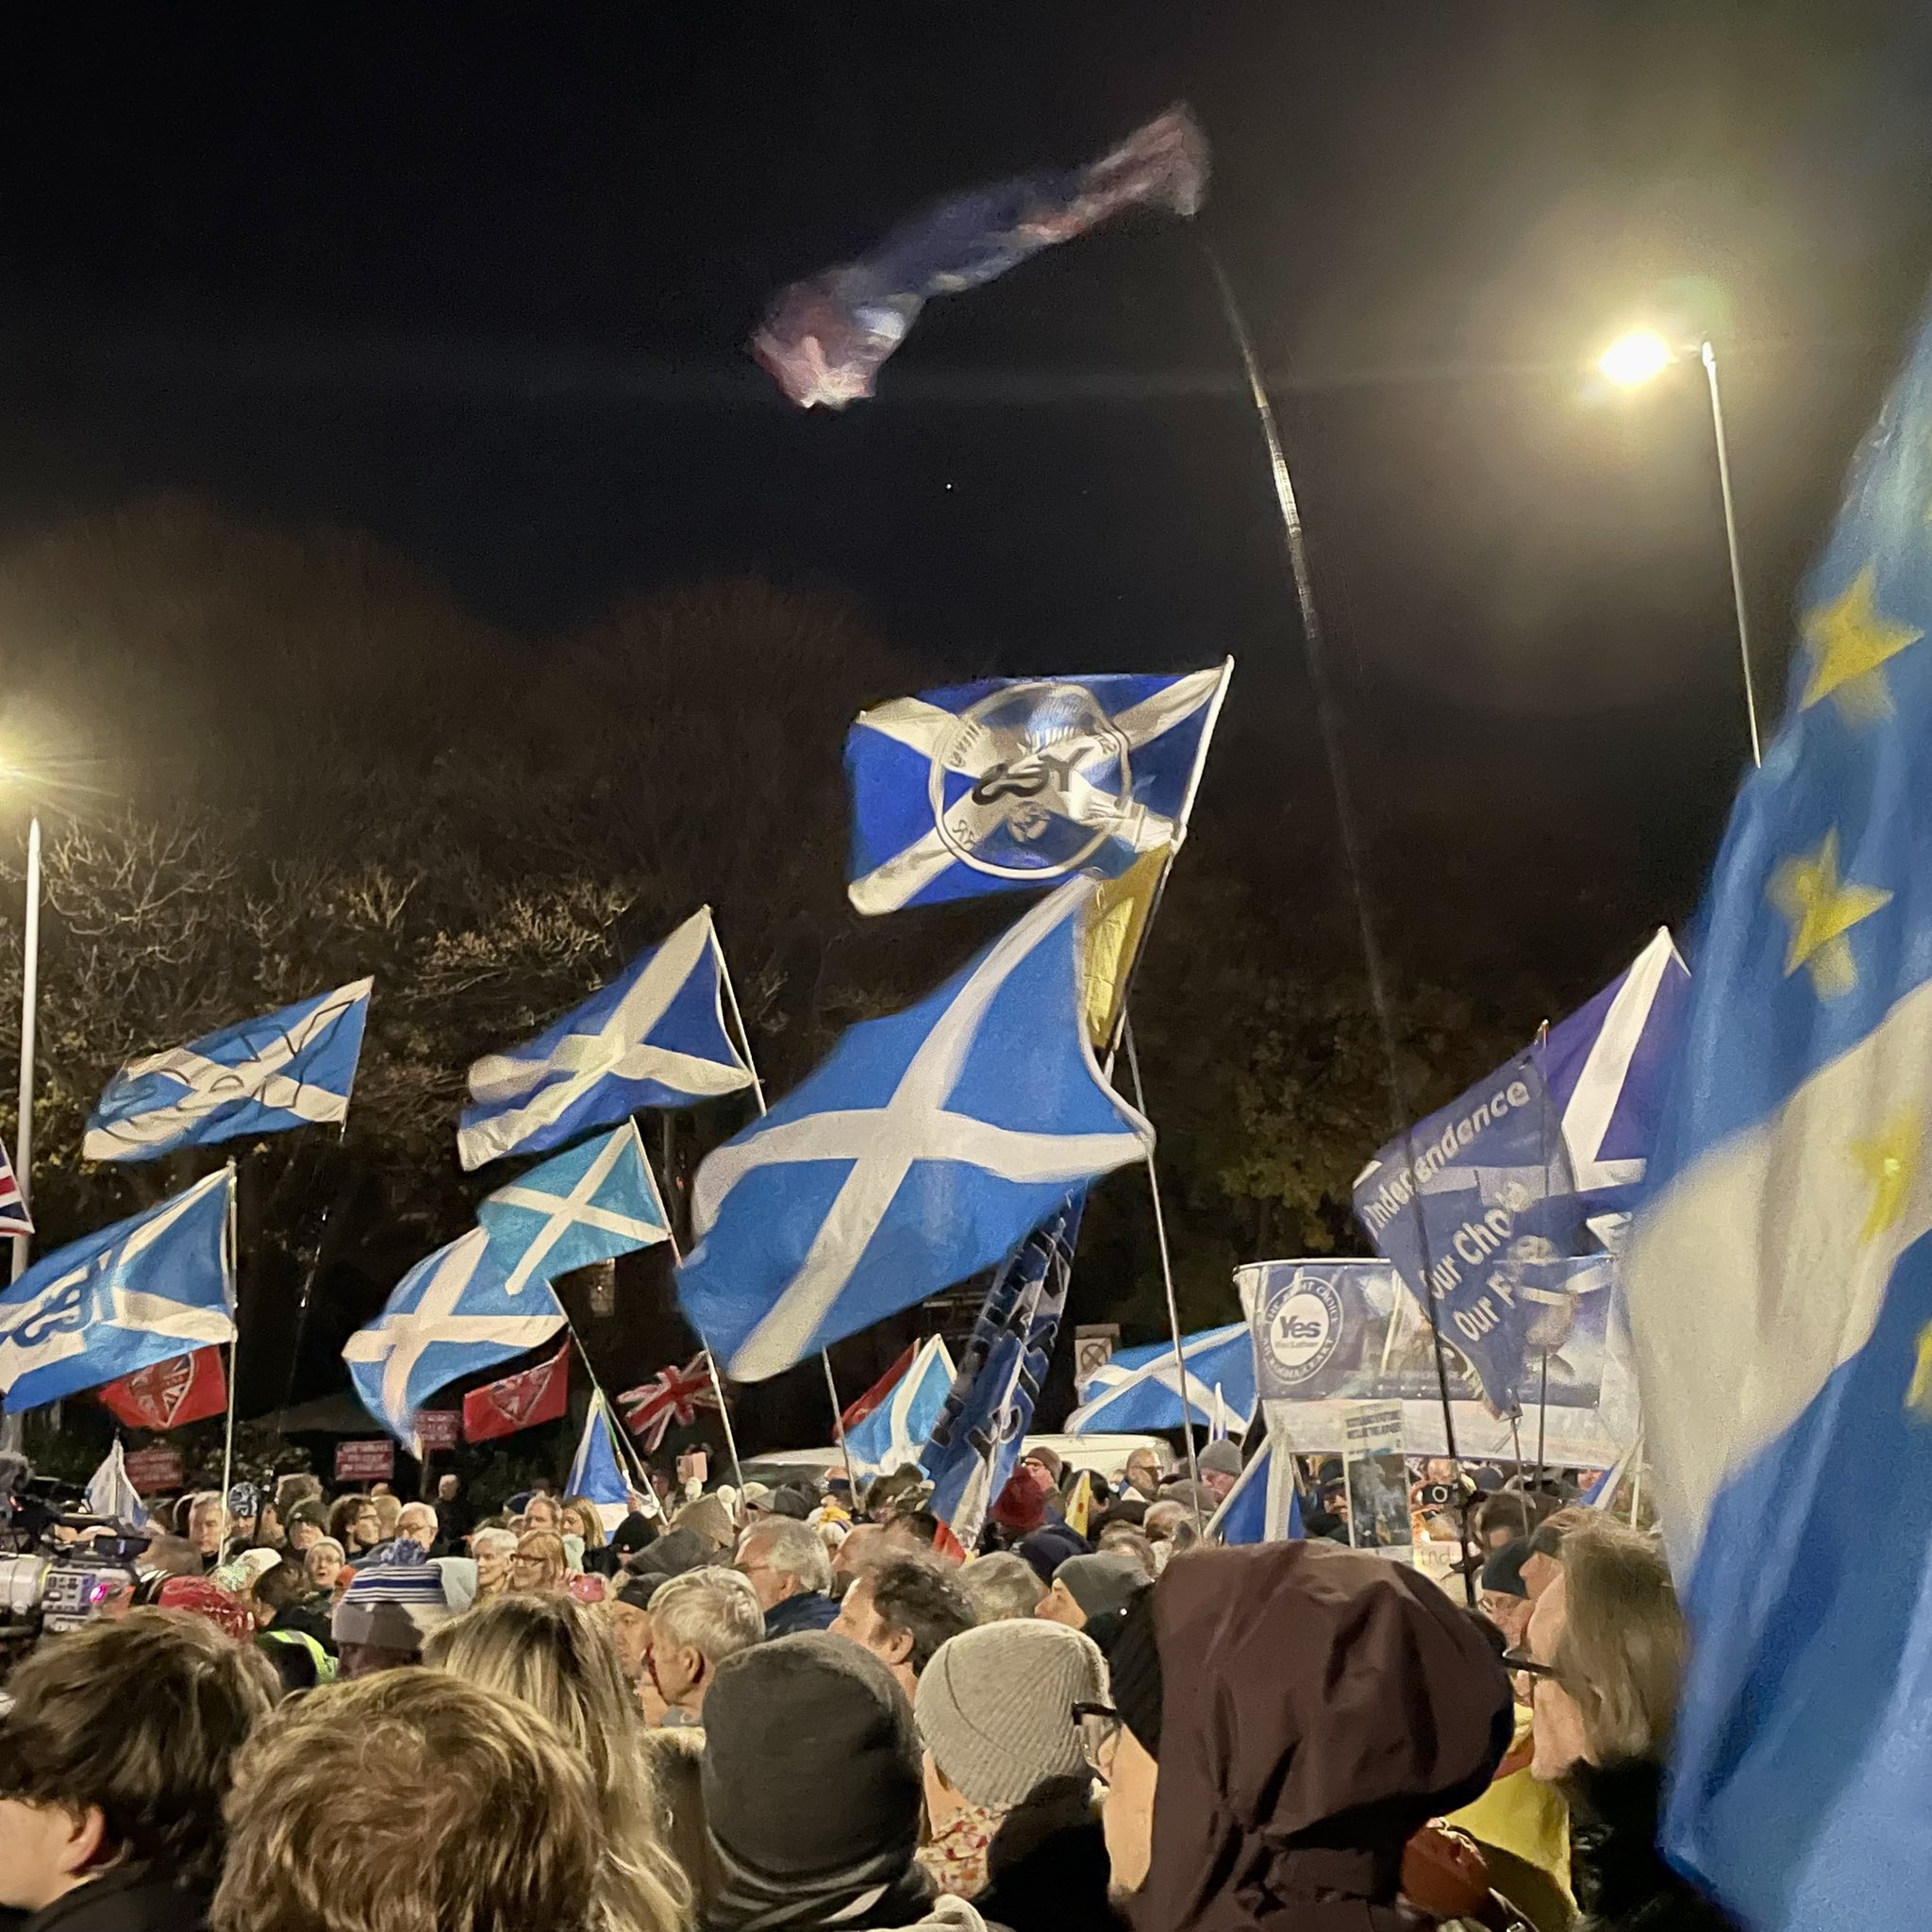 Milers d'escocesos prenen els carrers a favor del referèndum: "Depèn de nosaltres decidir!"